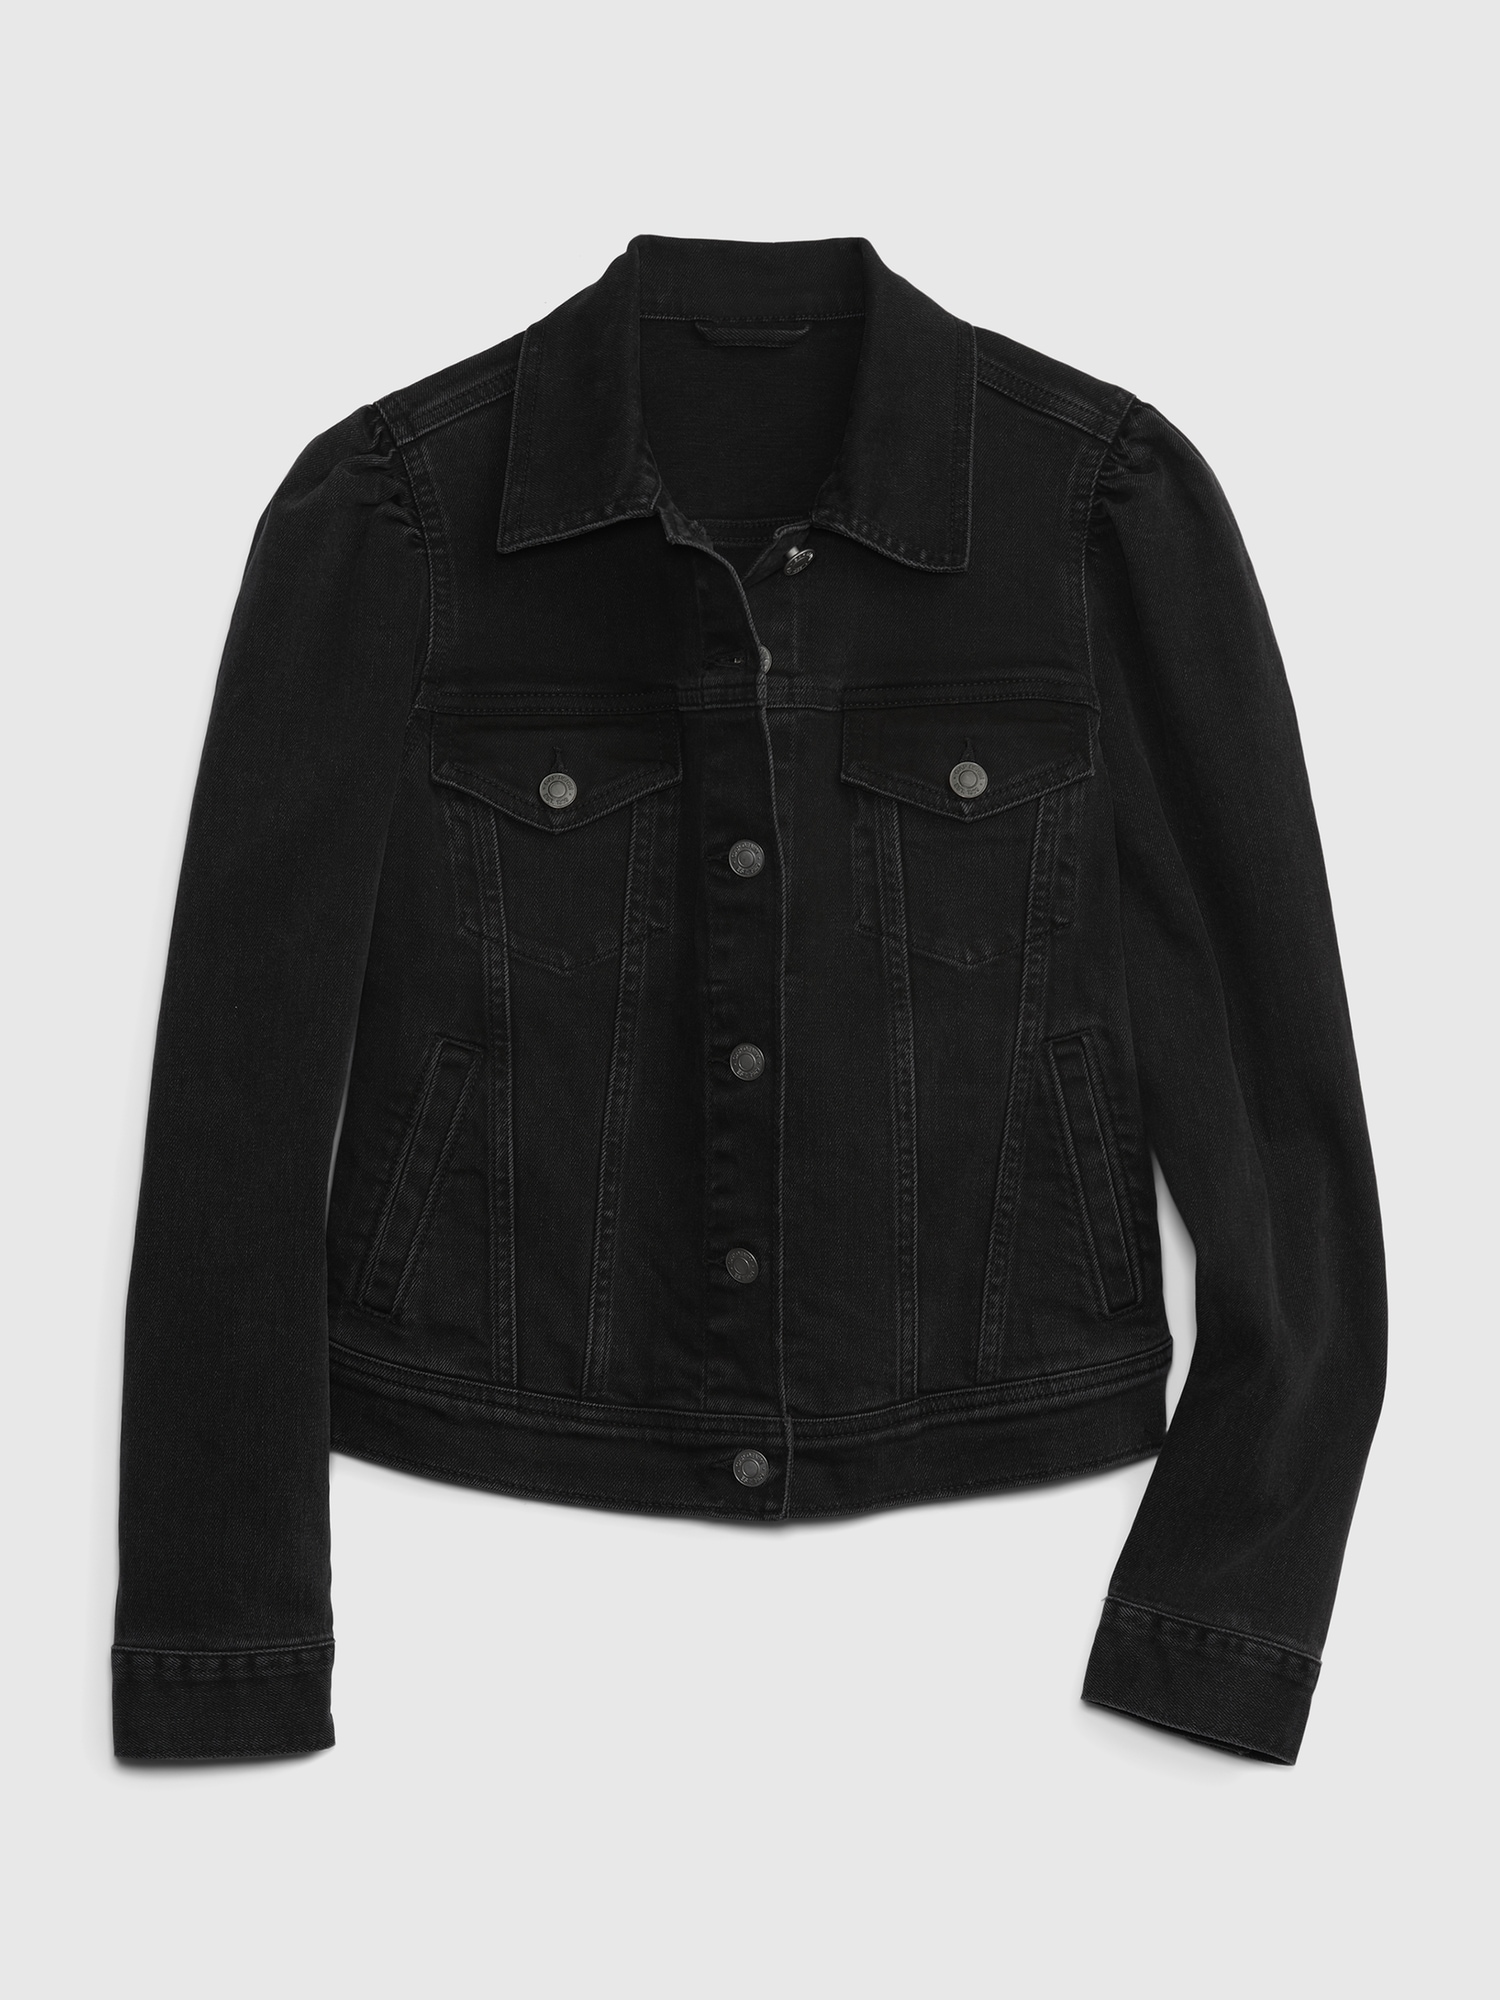 5 Bonafide Ways To Style Black Denim Jackets - YouTube